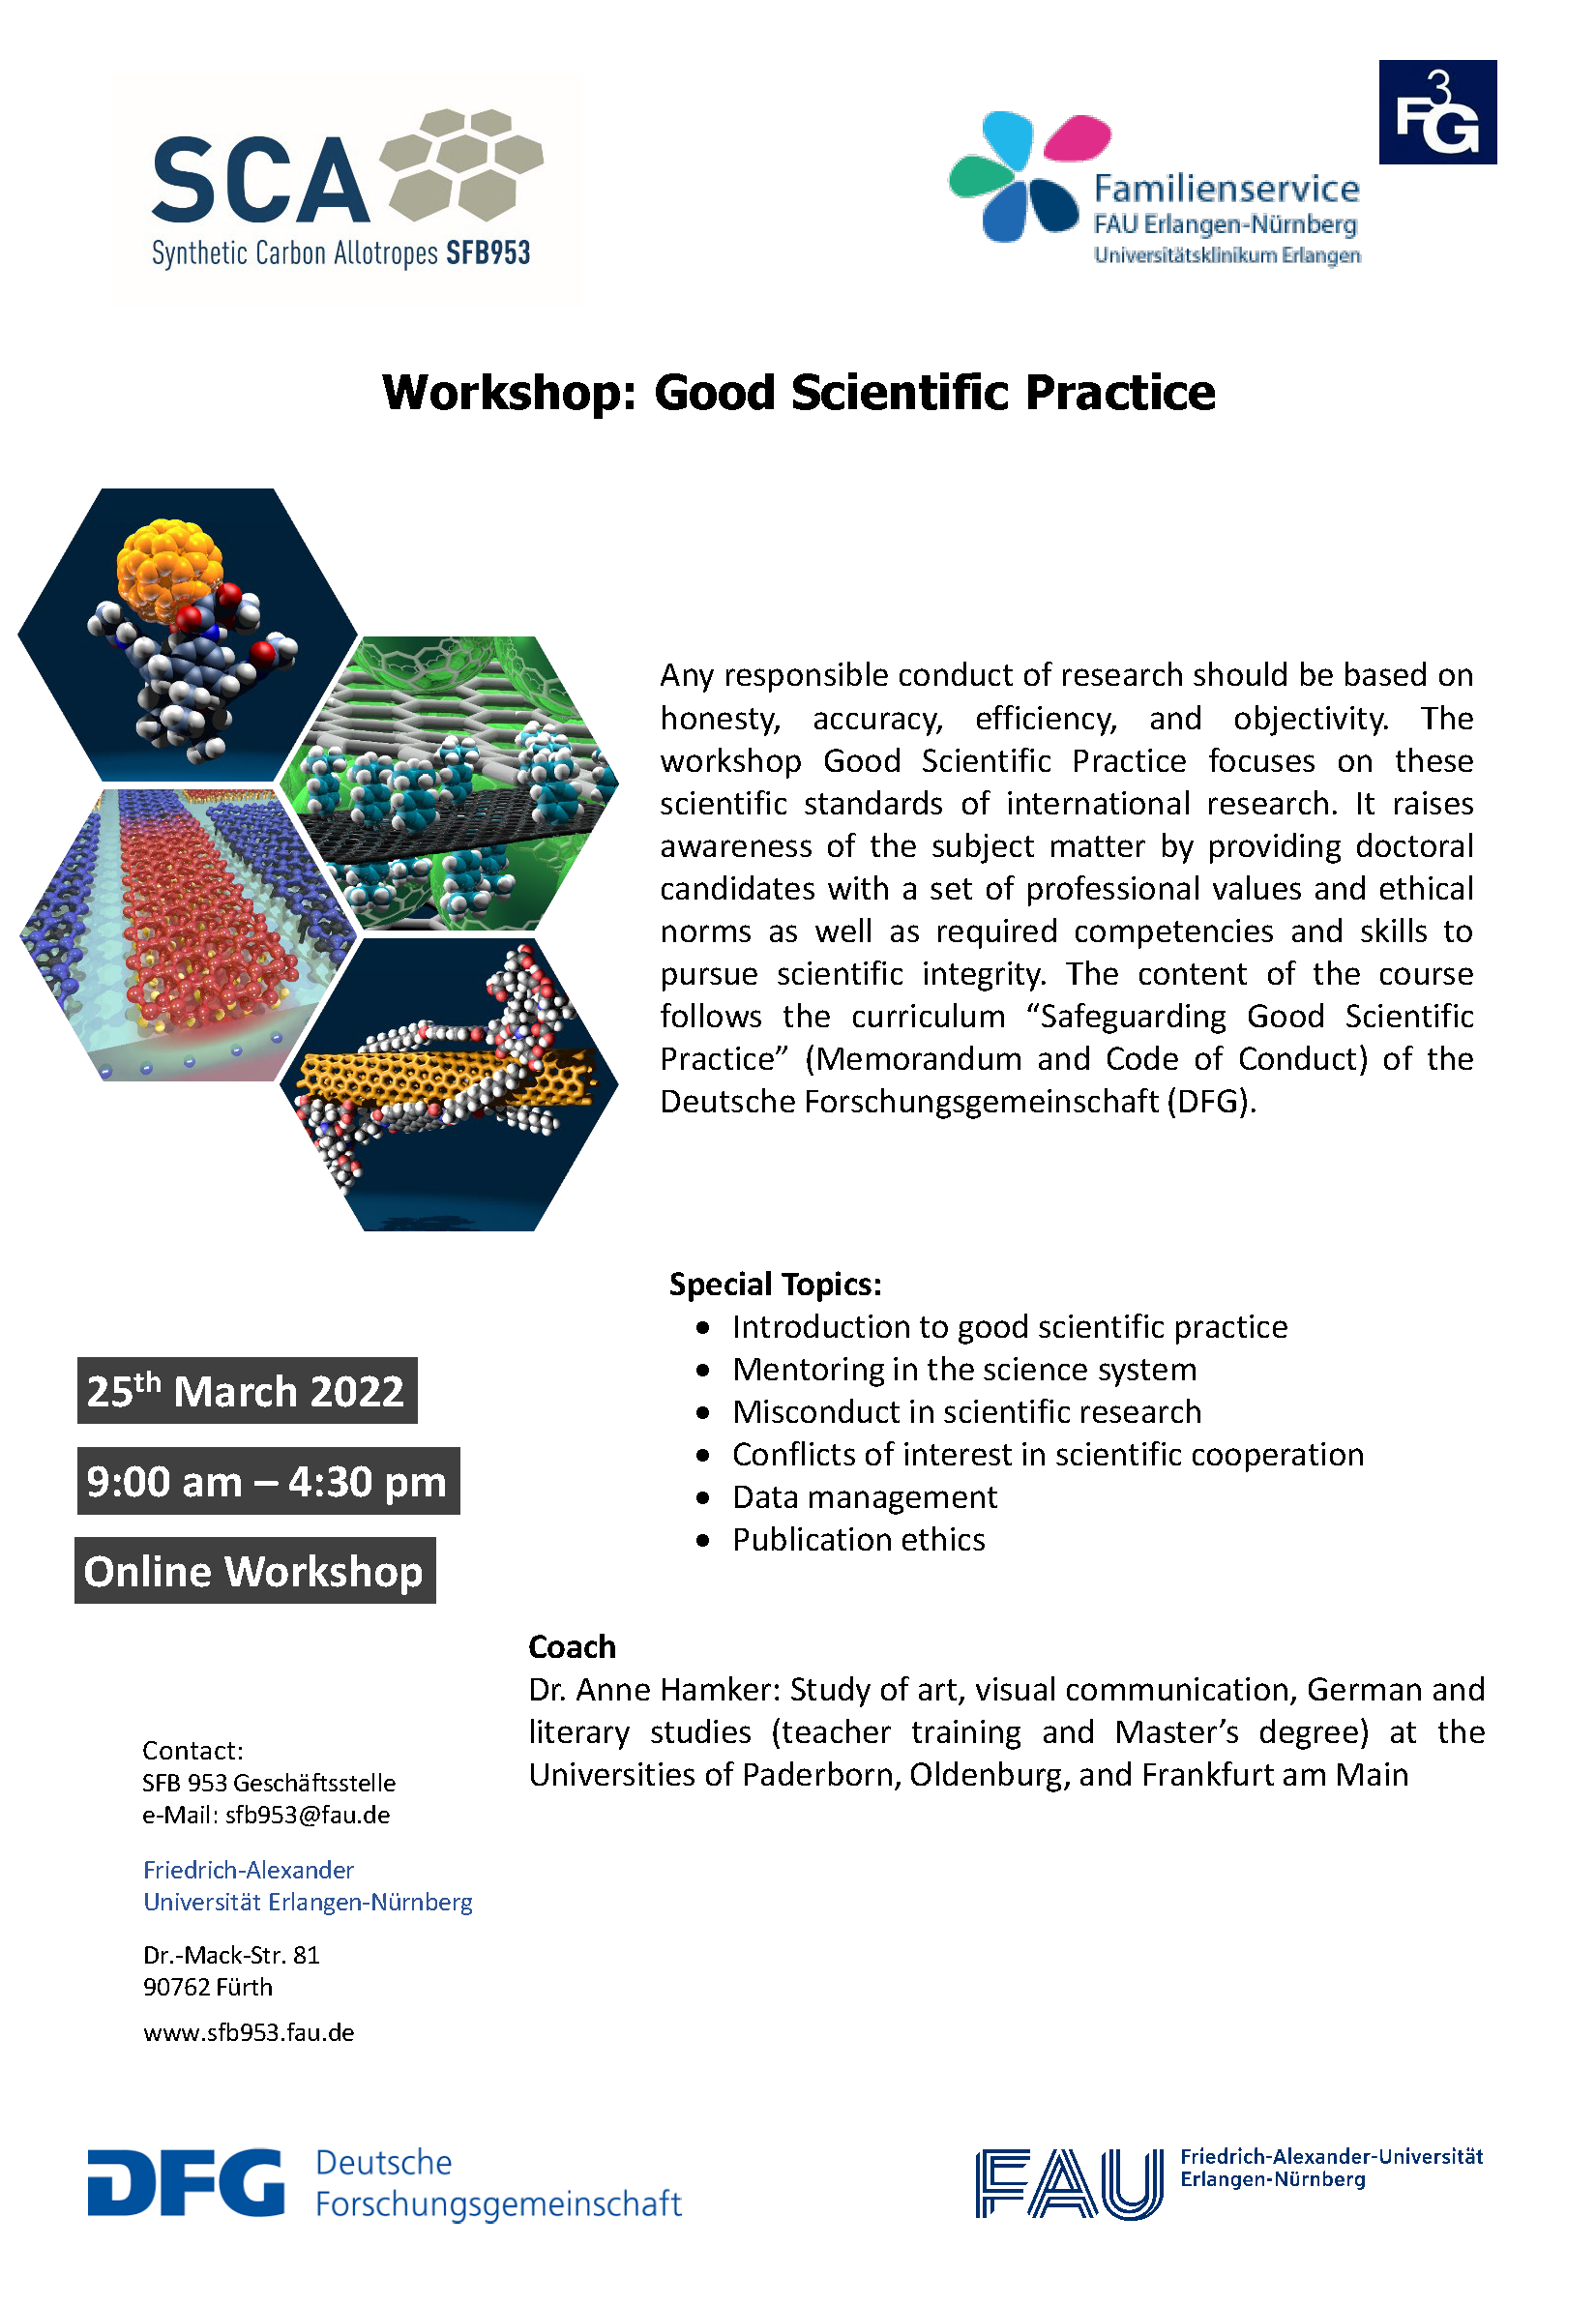 Poster "Workshop: Good Scientific Practice"